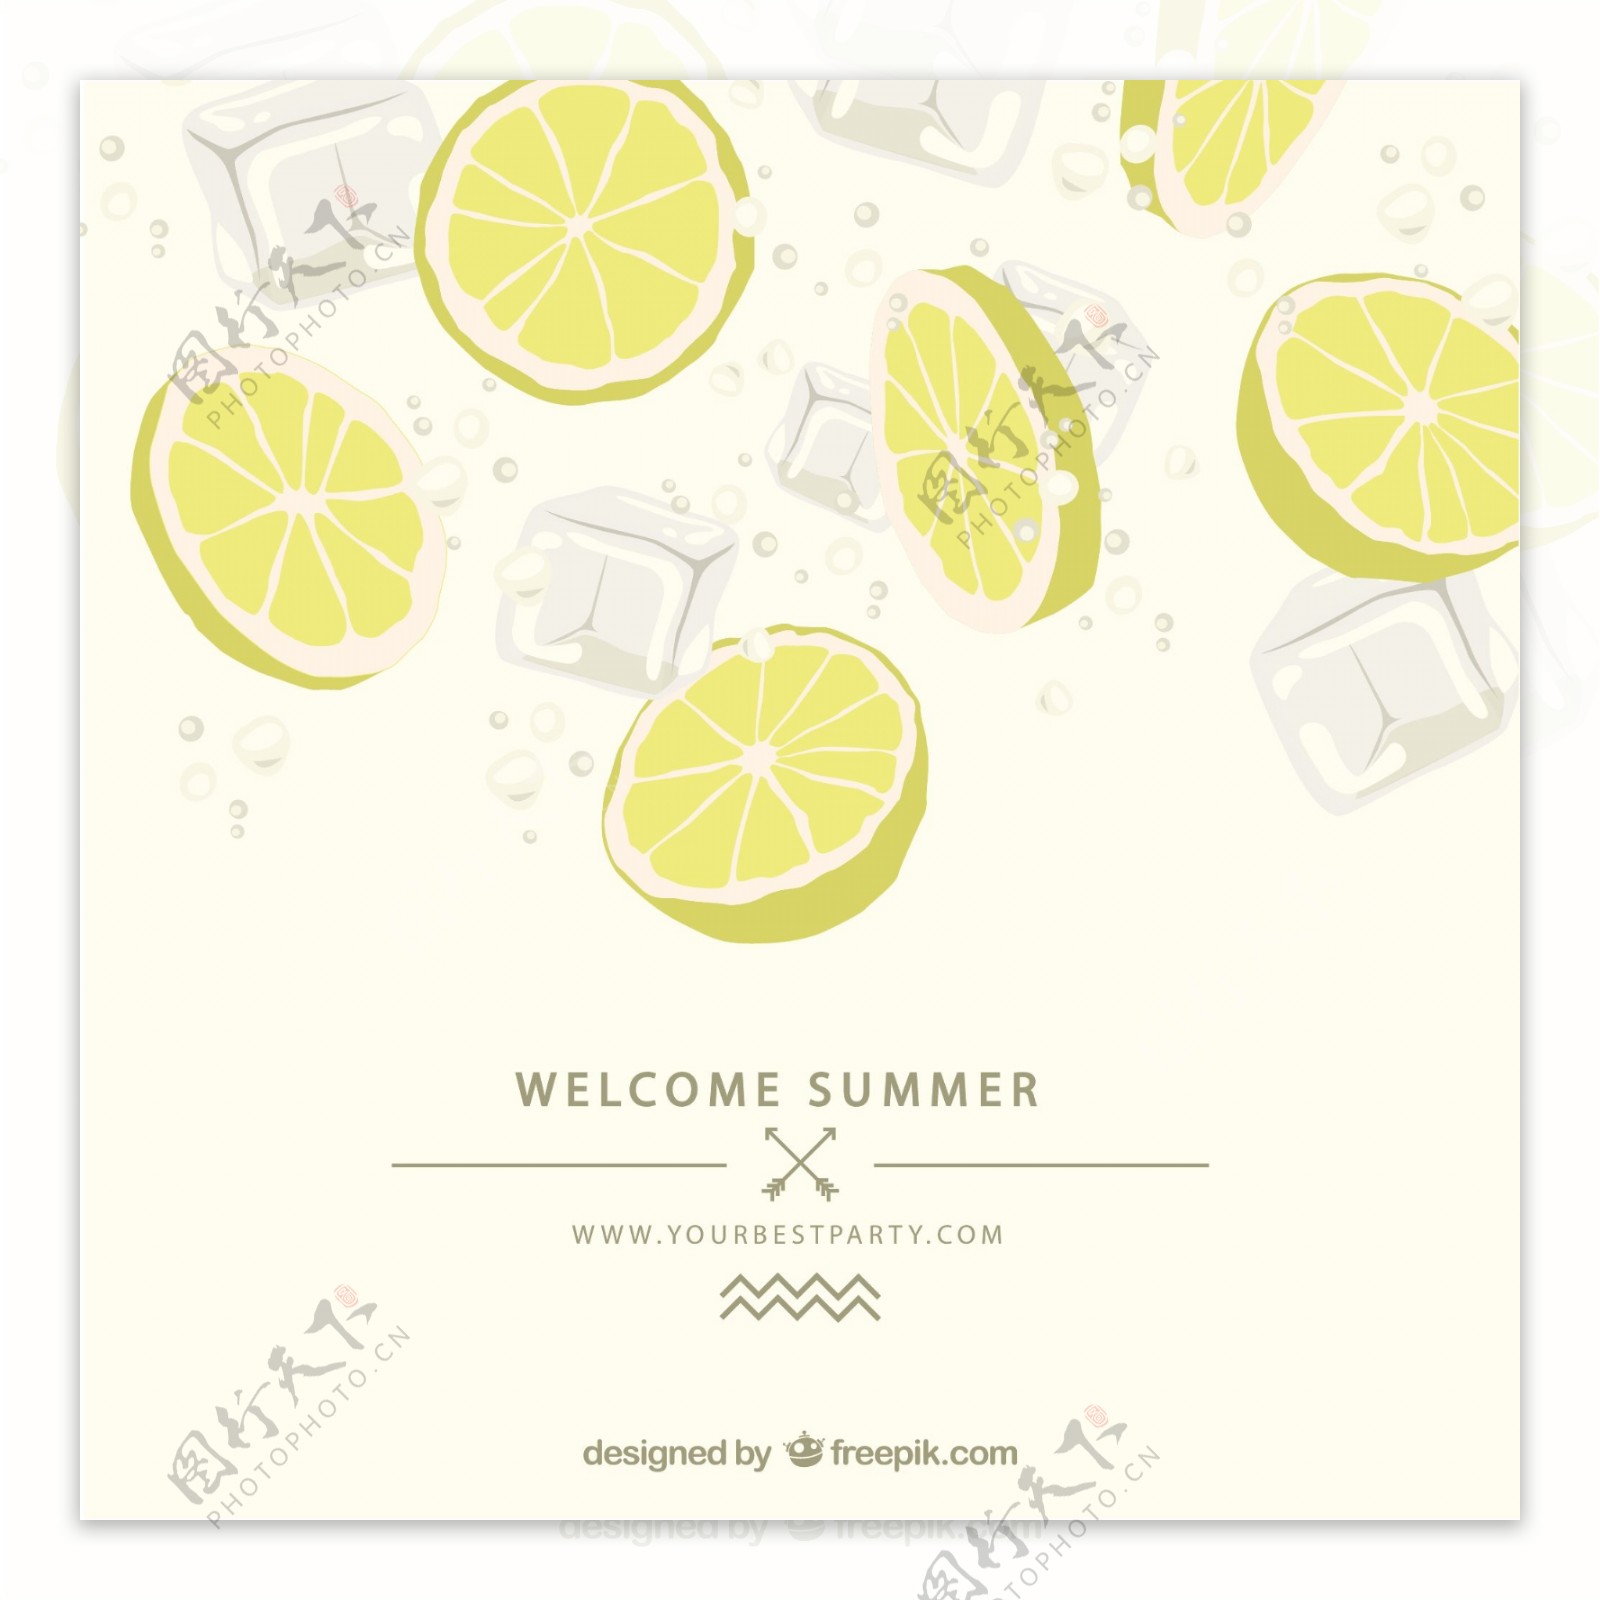 夏季海报柠檬片